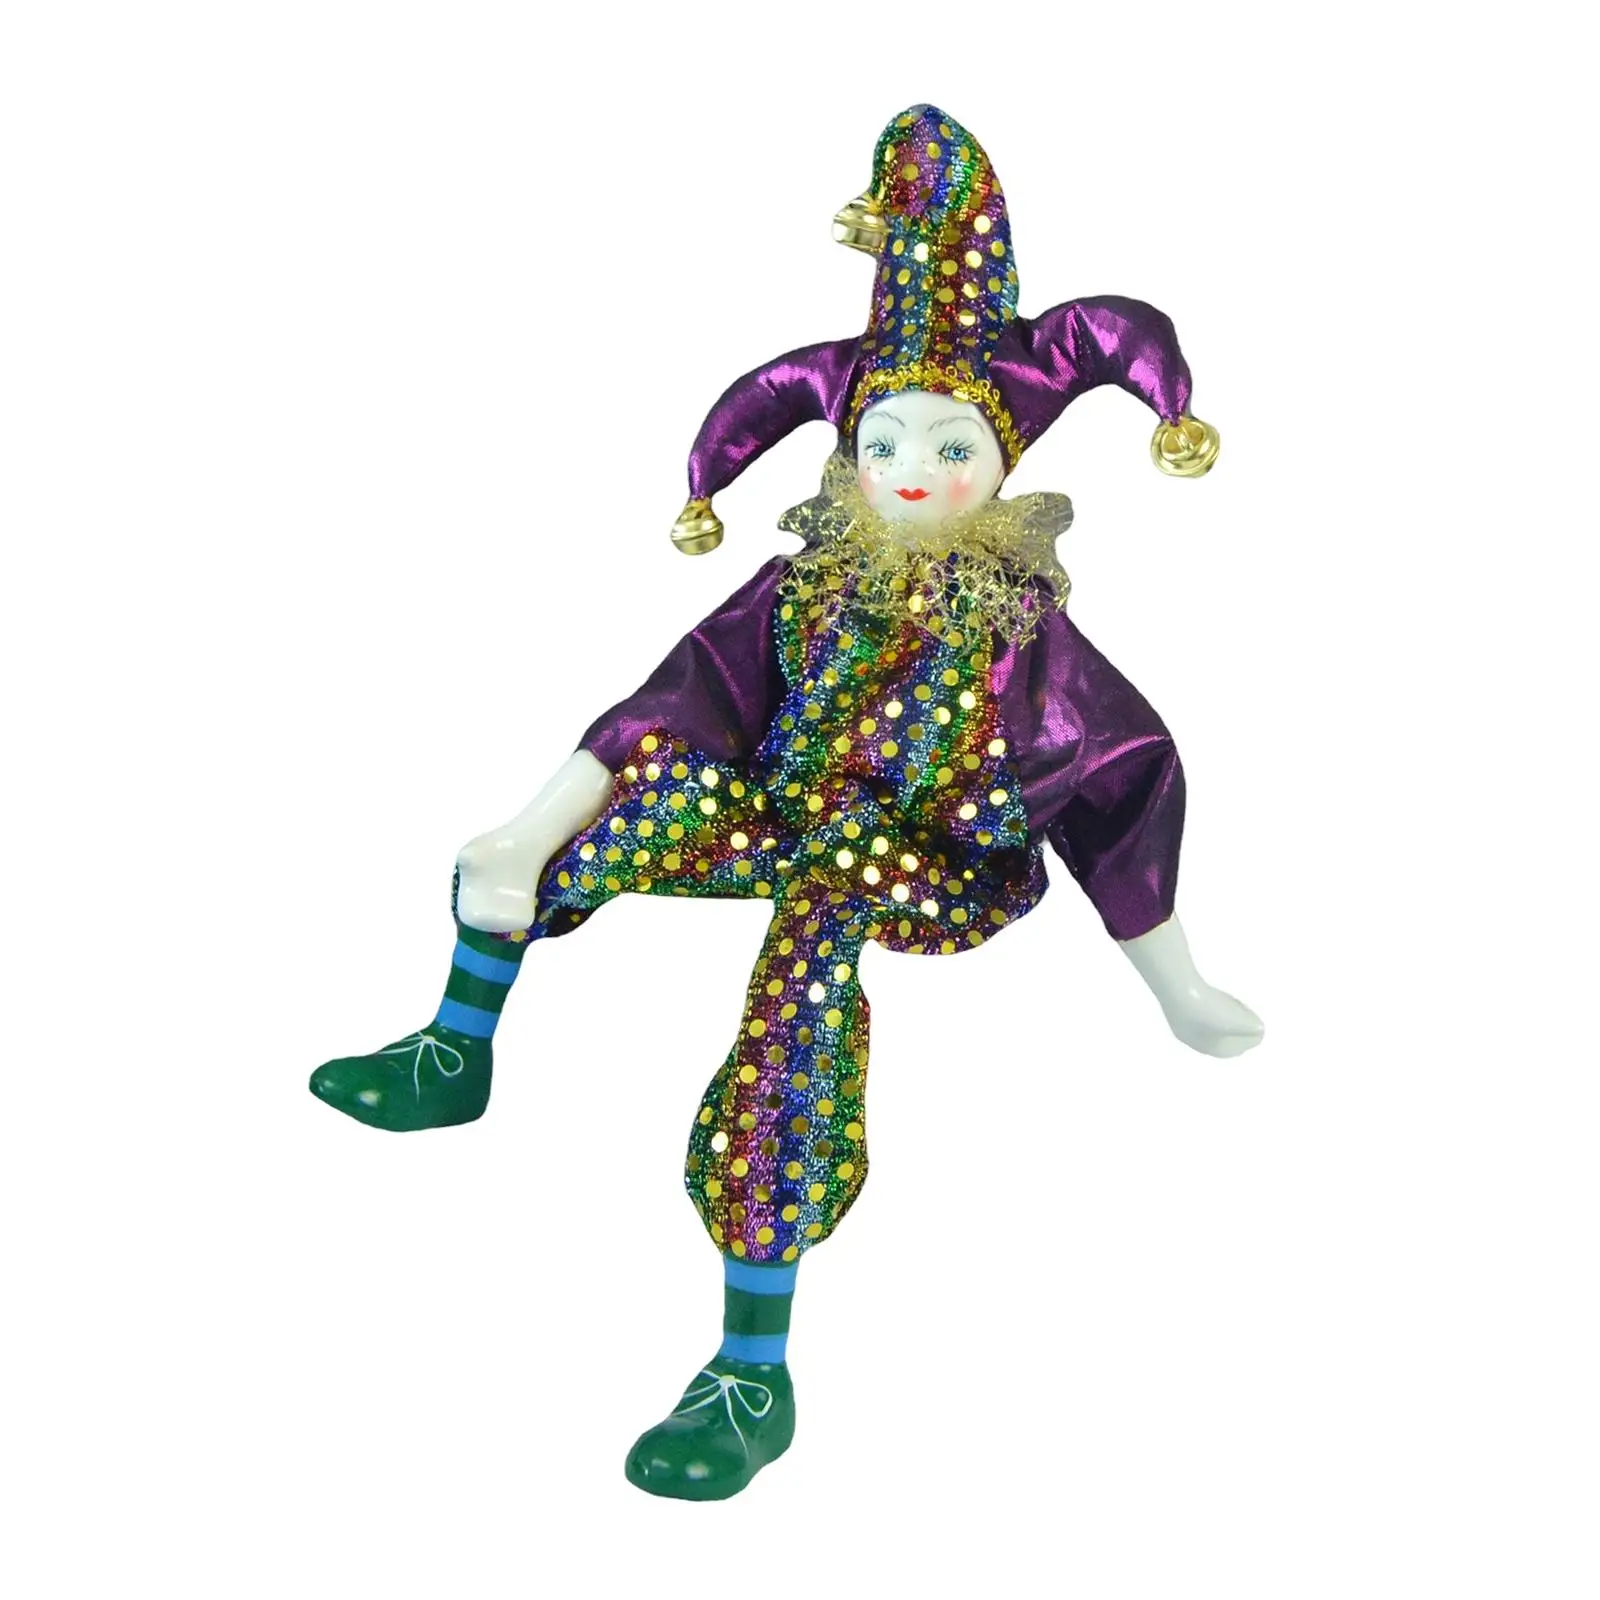 

Кукла арлекина ручной работы с костюмом из ткани, экшн-фигурка клоуна, фарфоровая искусственная для праздника, вечеринки, дня рождения